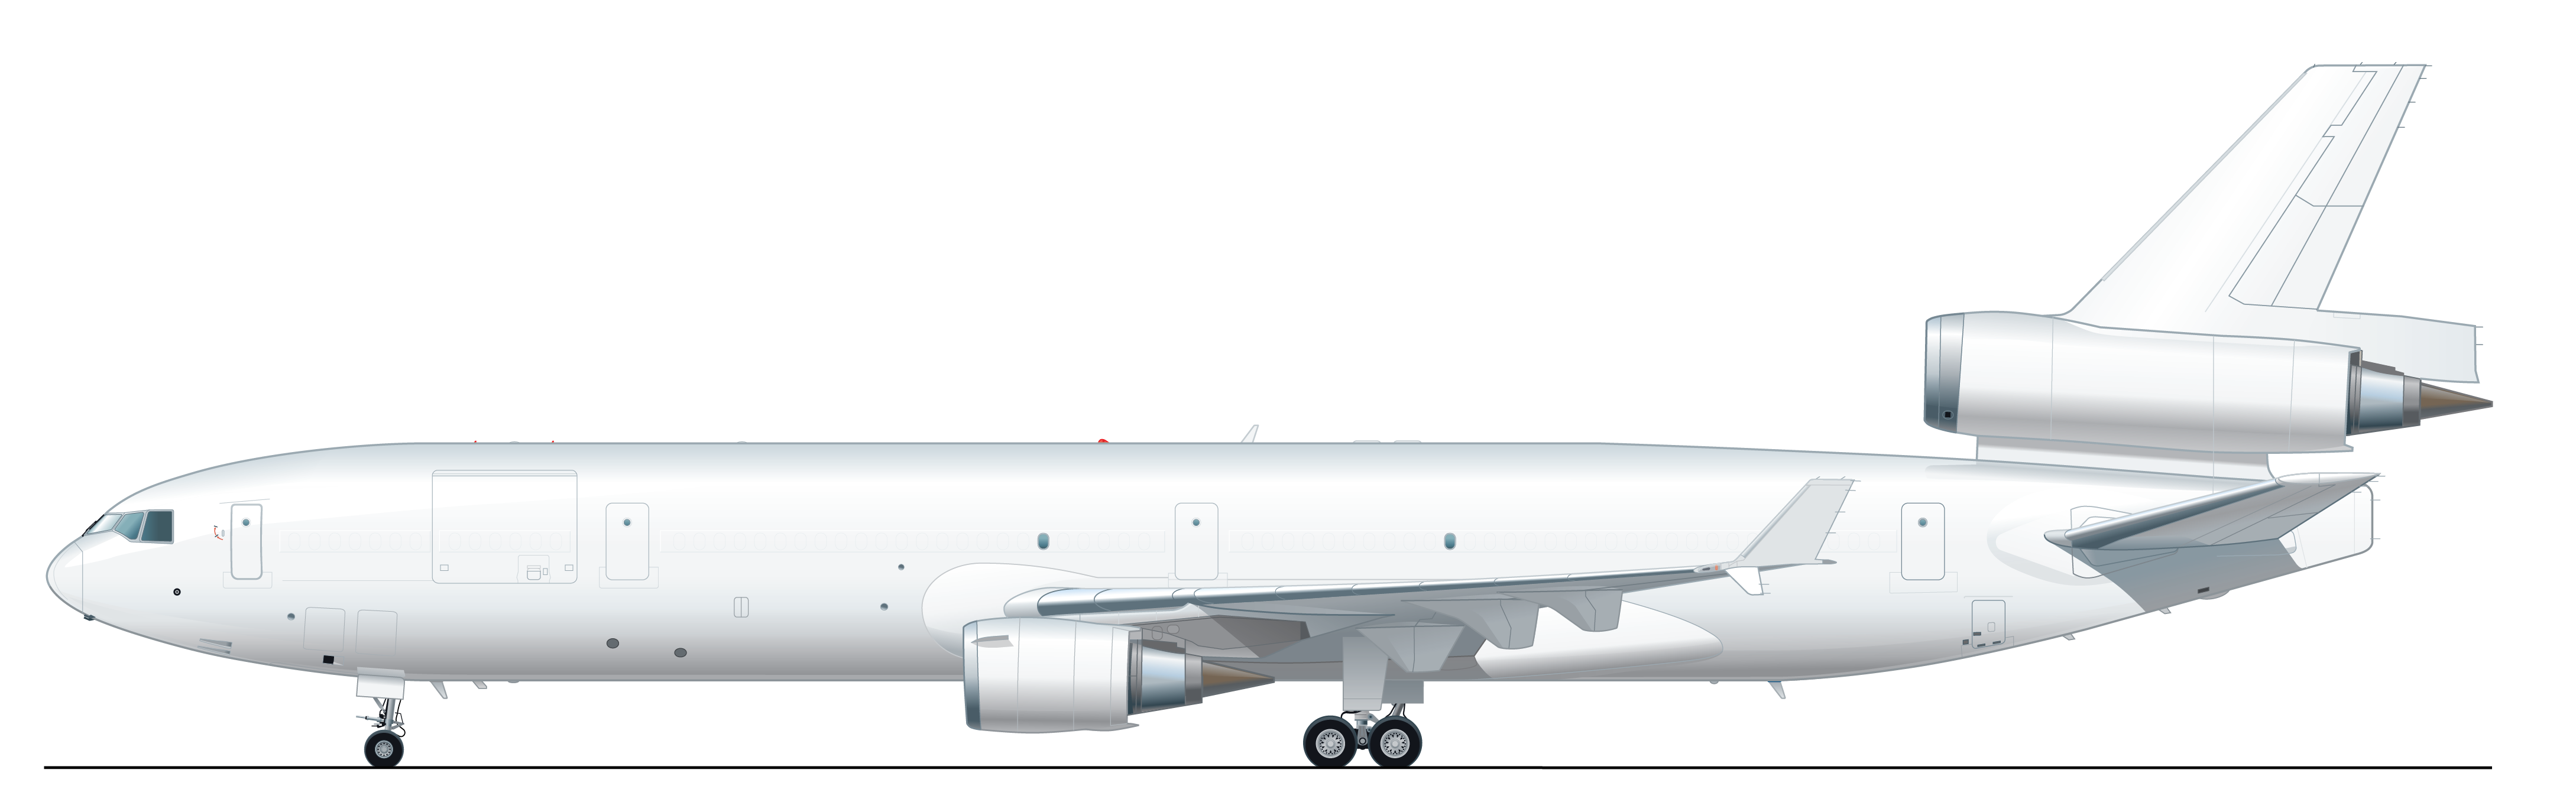 AAR MD-11F